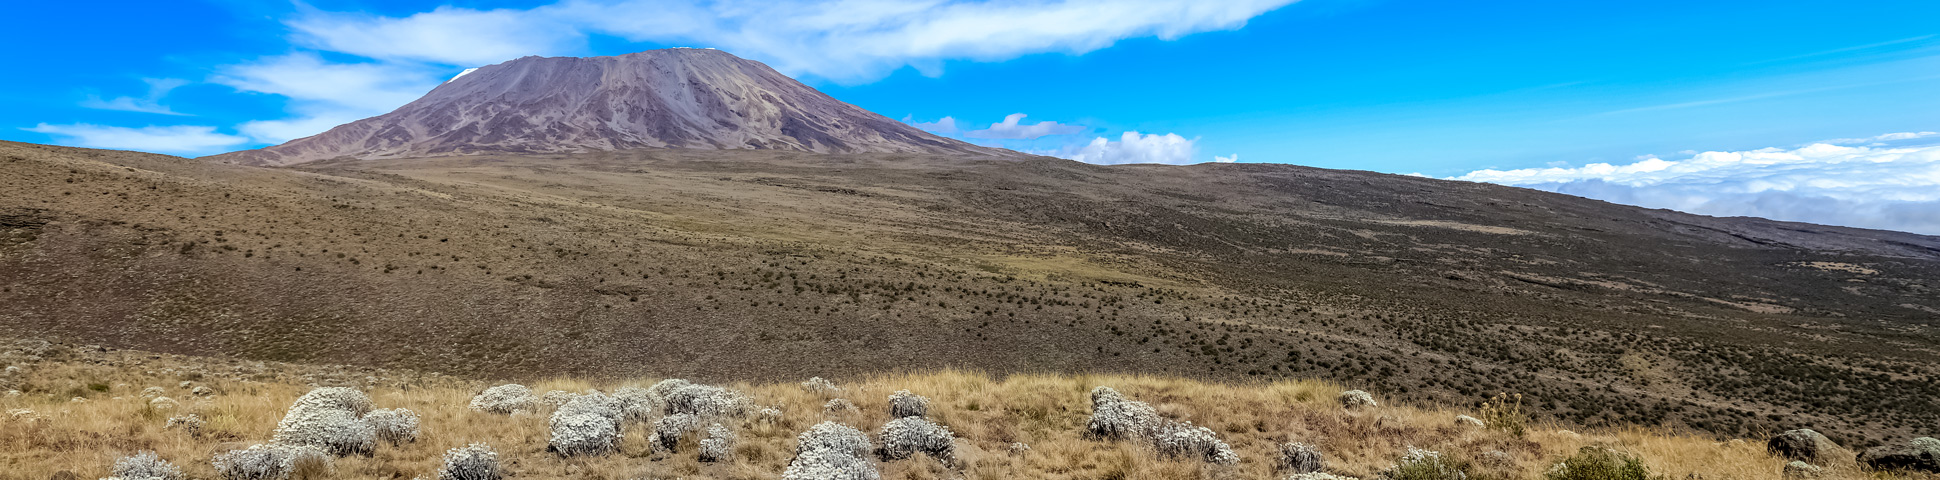 6-Day Mount Kilimanjaro on Rongai Route